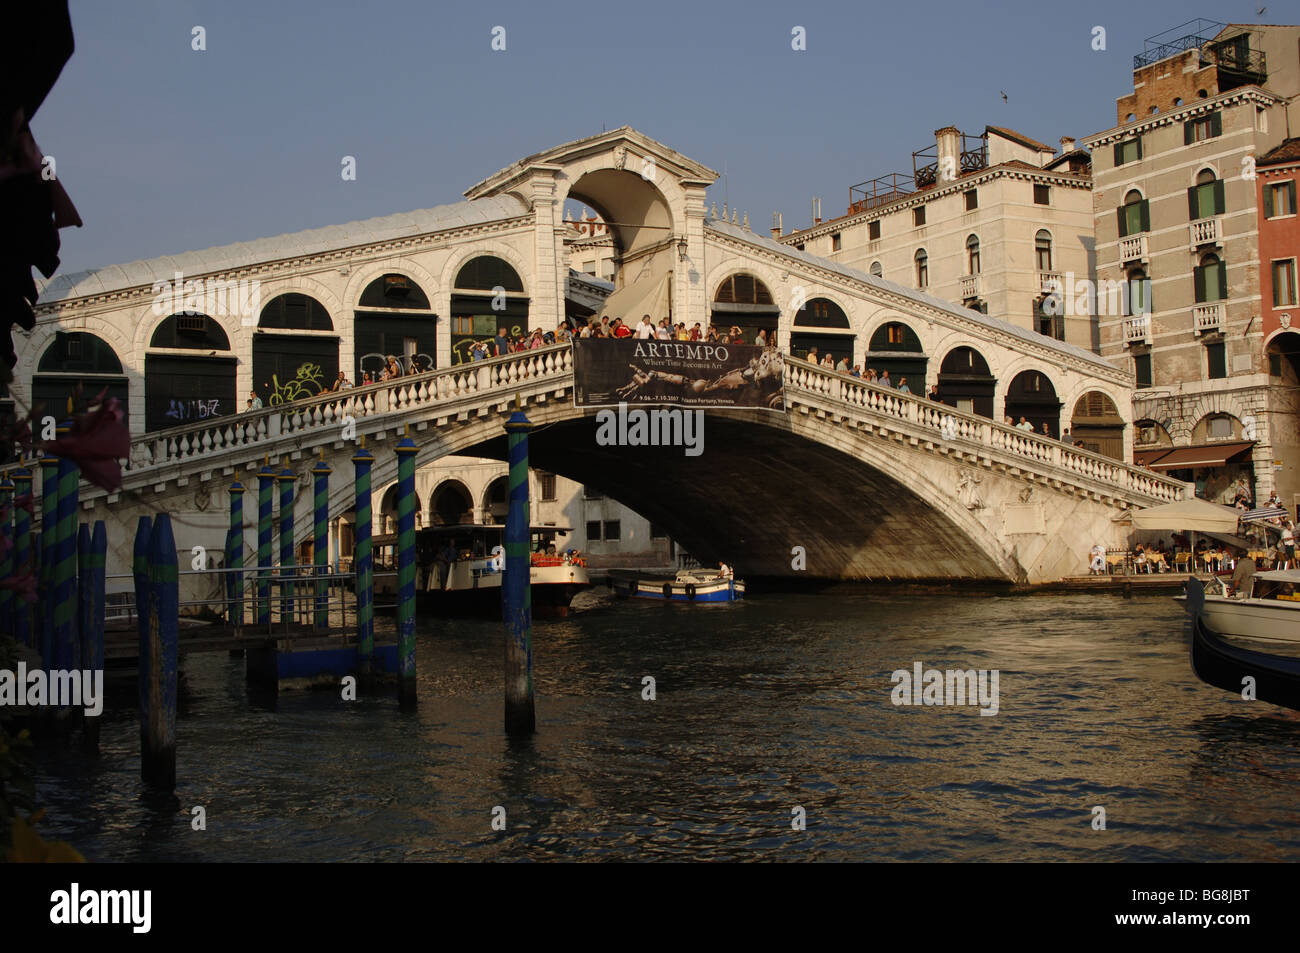 Italia. Venecia. Vista del Puente de Rialto en el Gran Canal, construido en el siglo XVI. Foto de stock